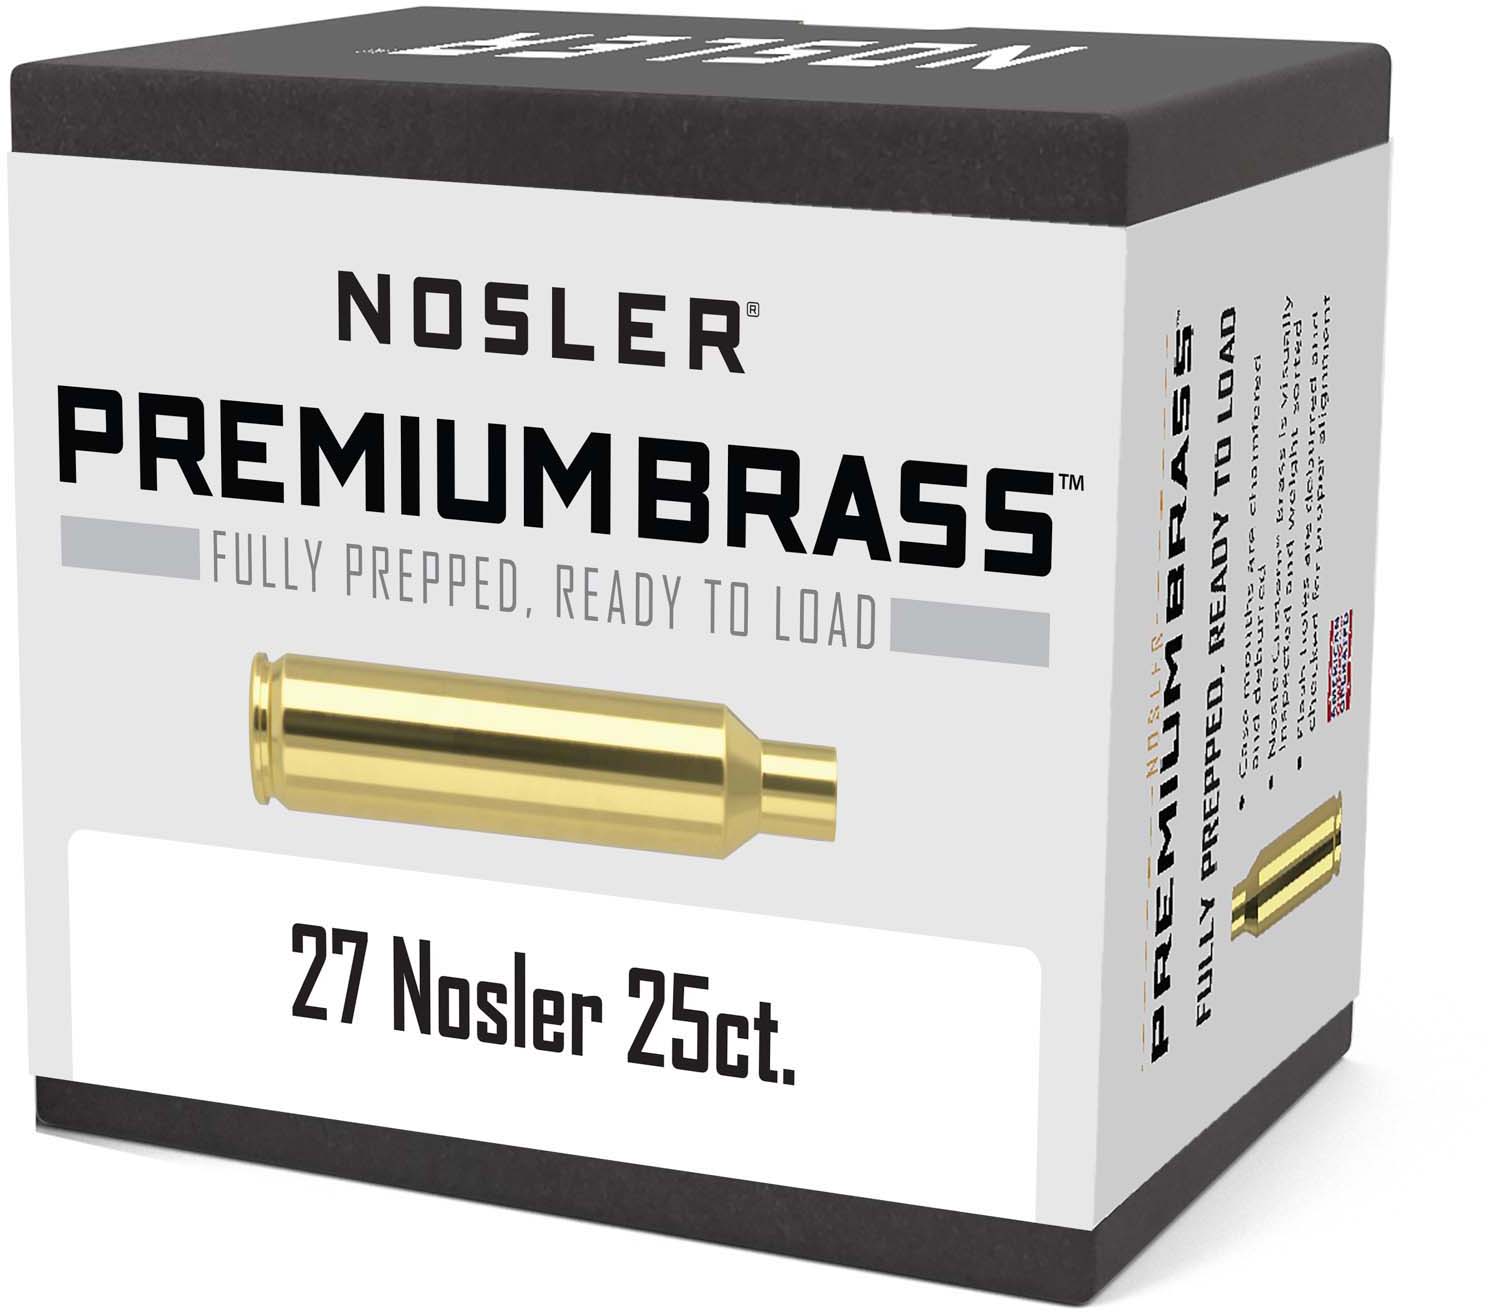 Nosler Brass 